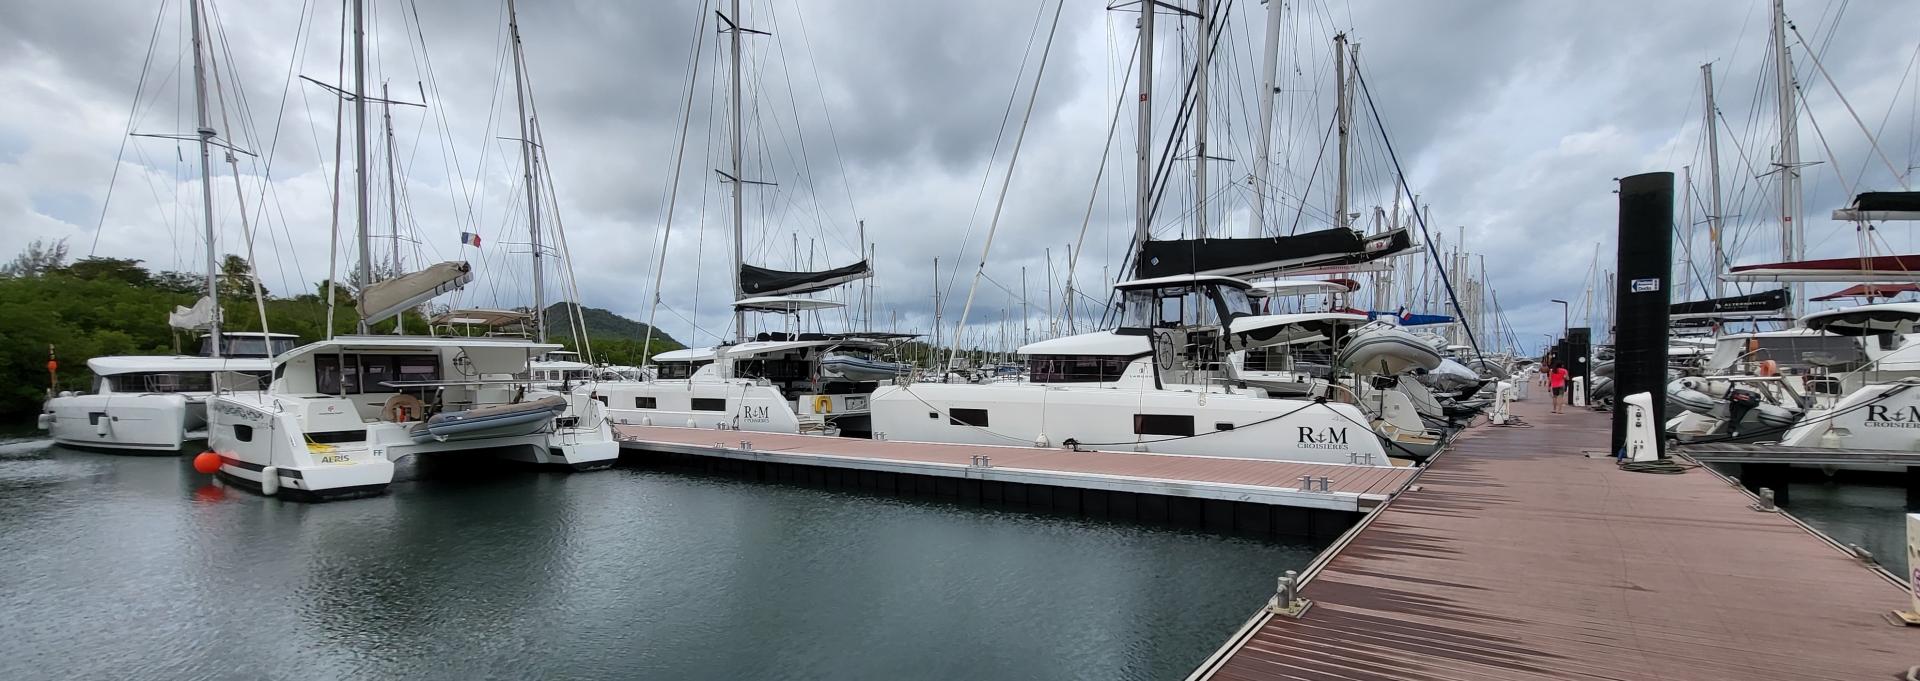 R&M Croisières - catamarans de location en Martinique